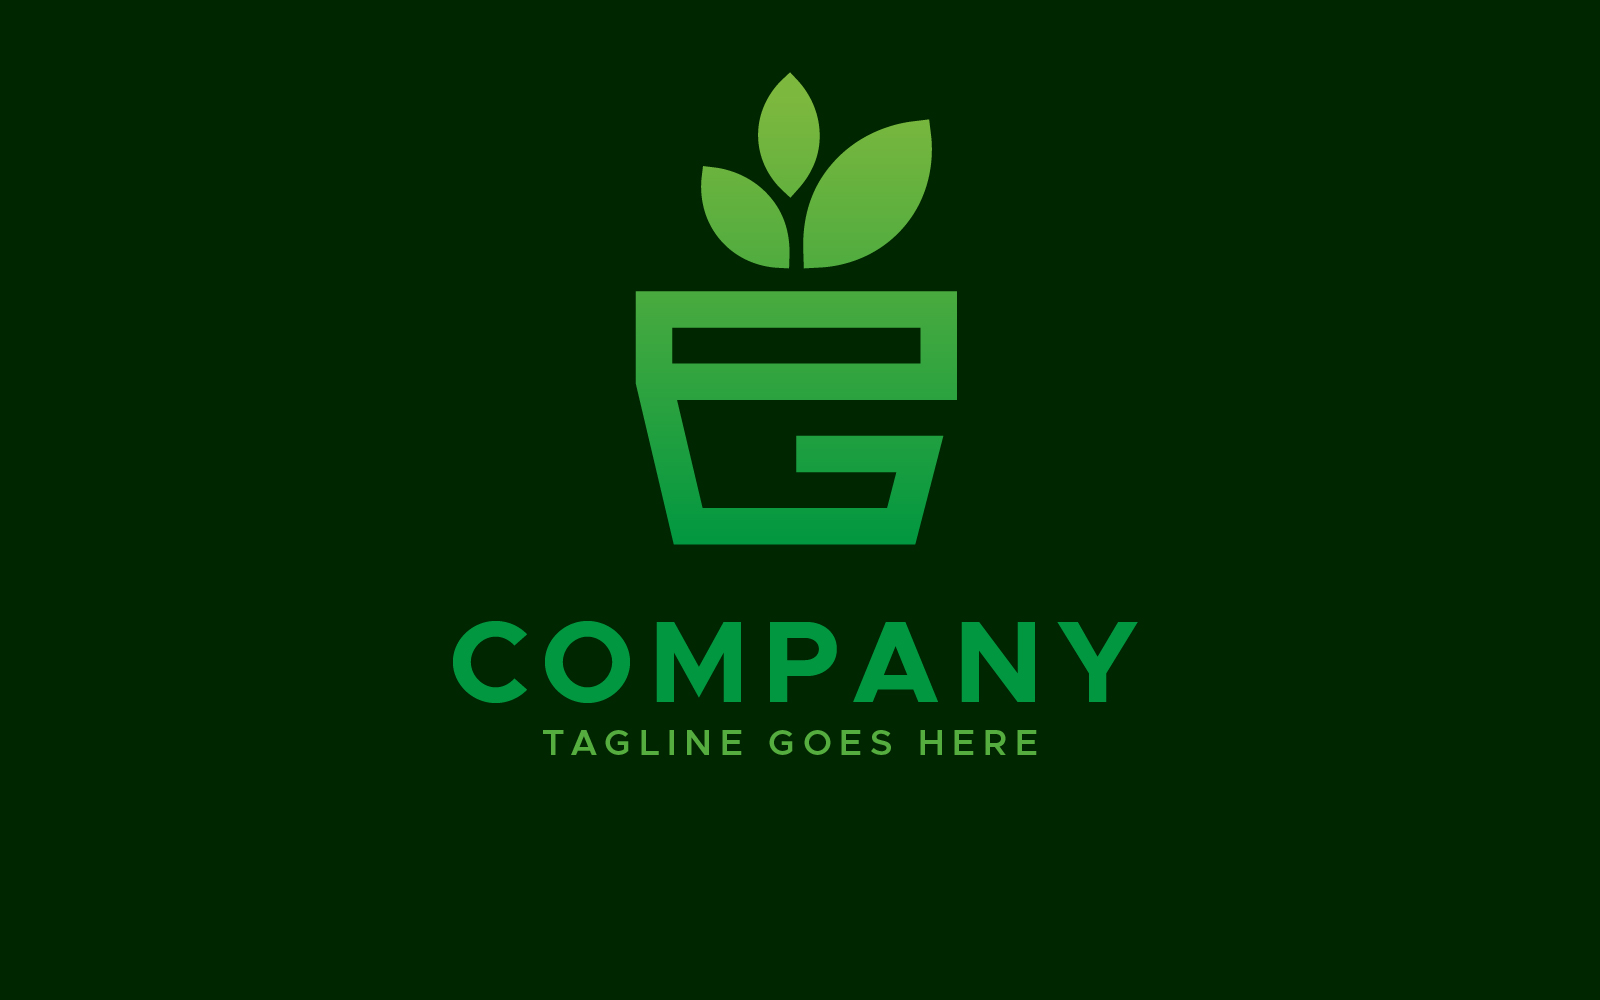 EG letter gardening plant logo design template